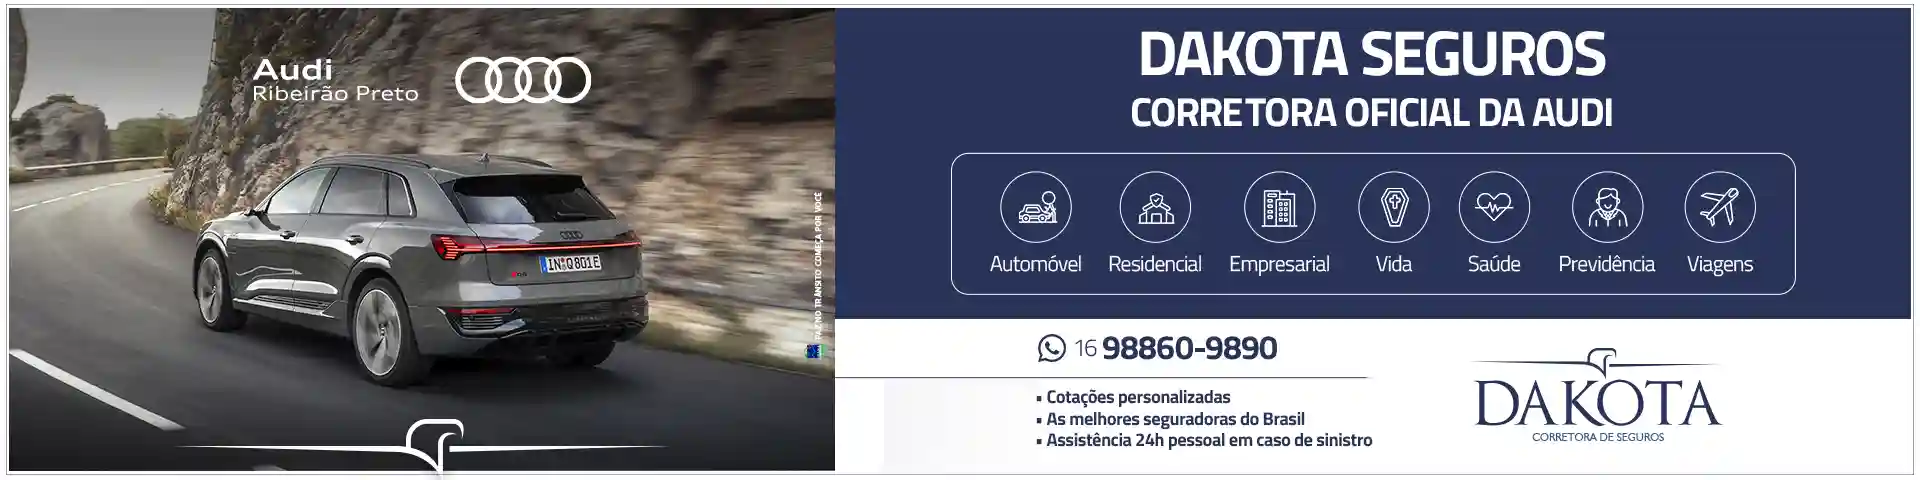 Dakota Seguros - corretora oficial da Audi